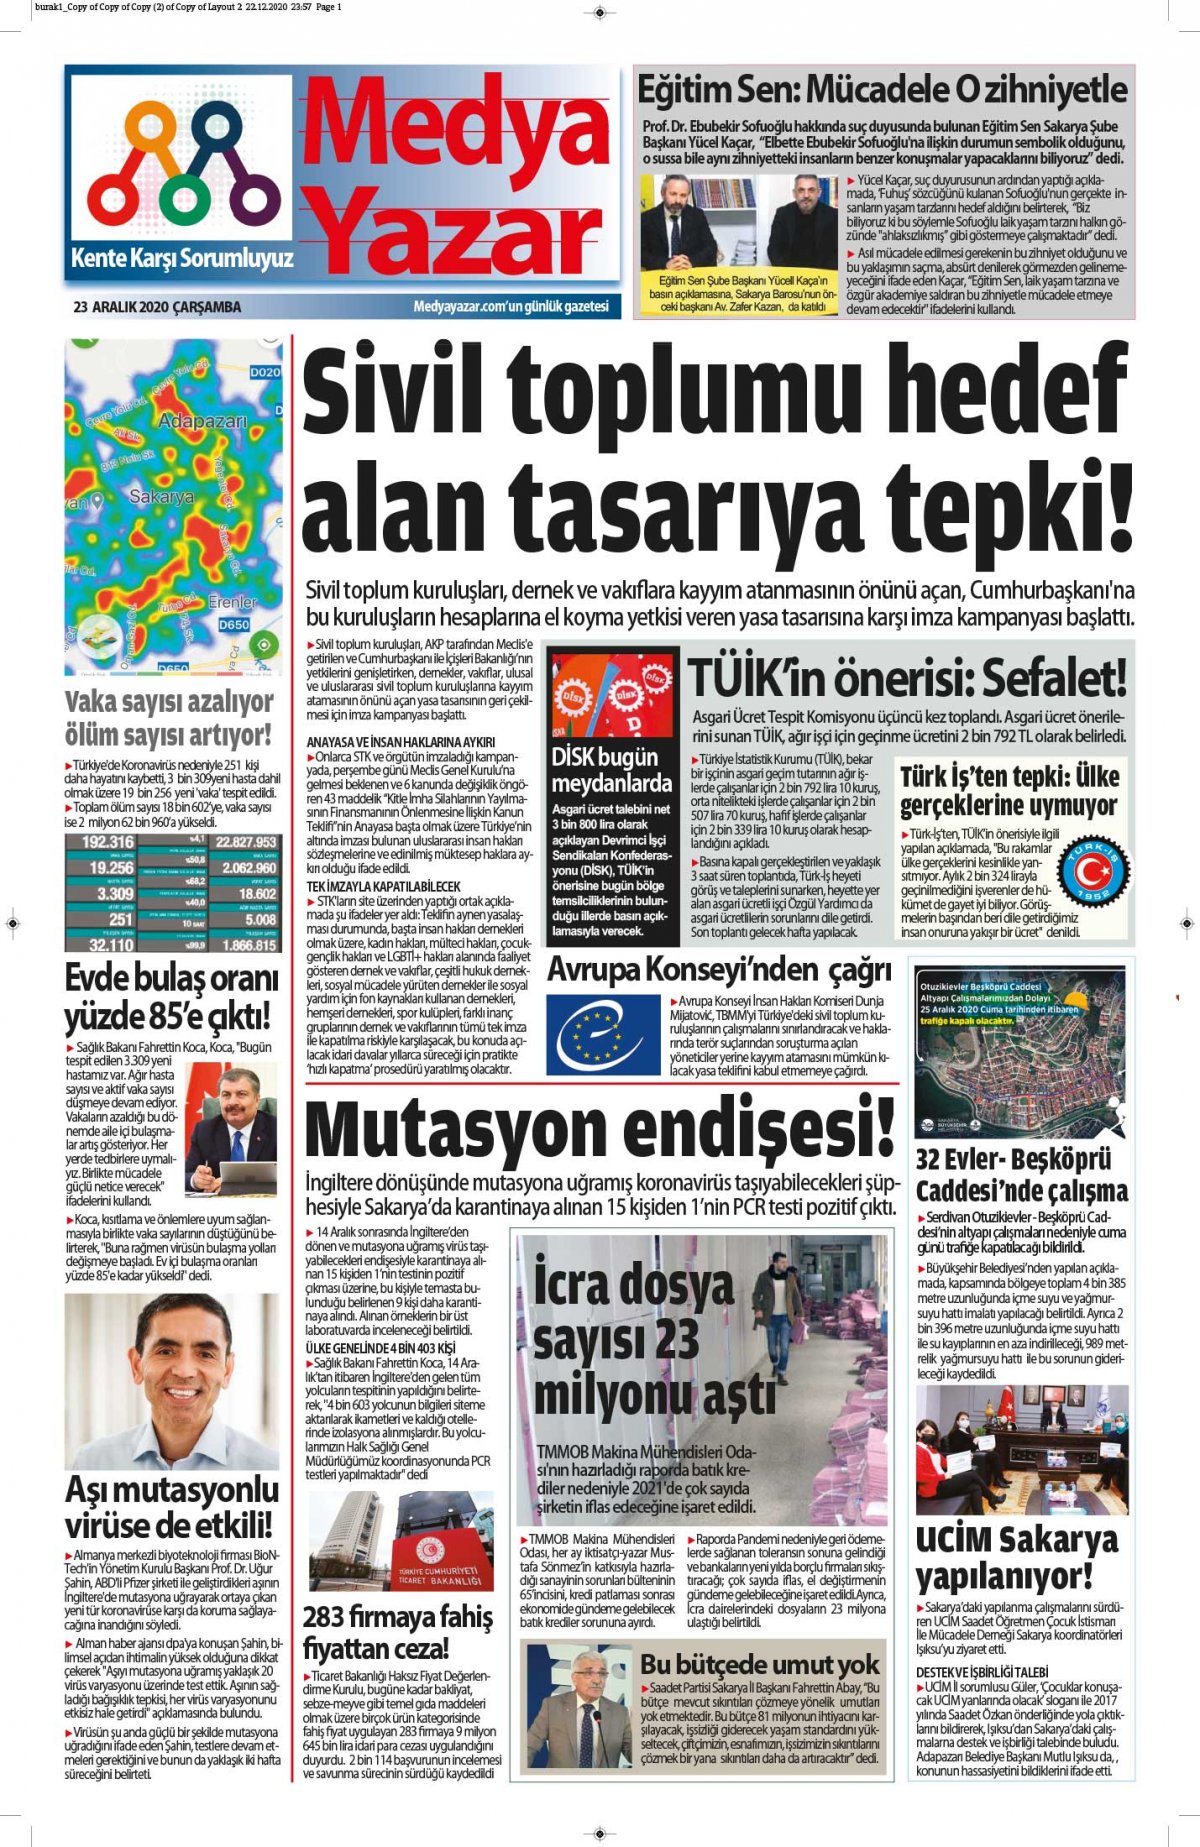 MedyaYazar - 23.12.2020 Manşeti